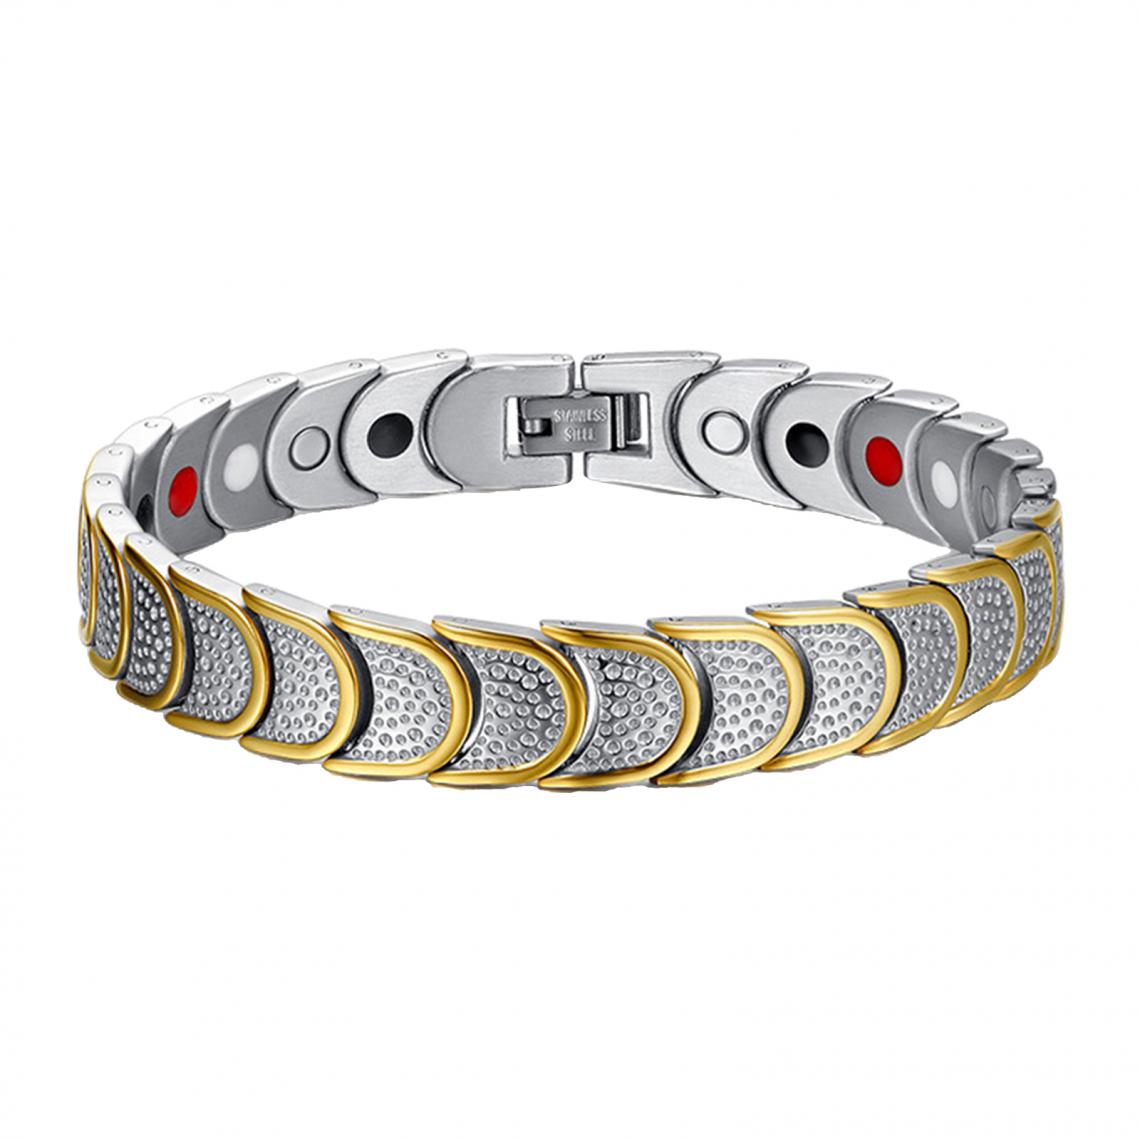 marque generique - Bracelets De Bracelet De Thérapie De Bijoux Magnétiques Pour Les Cadeaux De Soins De Santé De La Fête Des Pères Noir Pur - Bracelet connecté